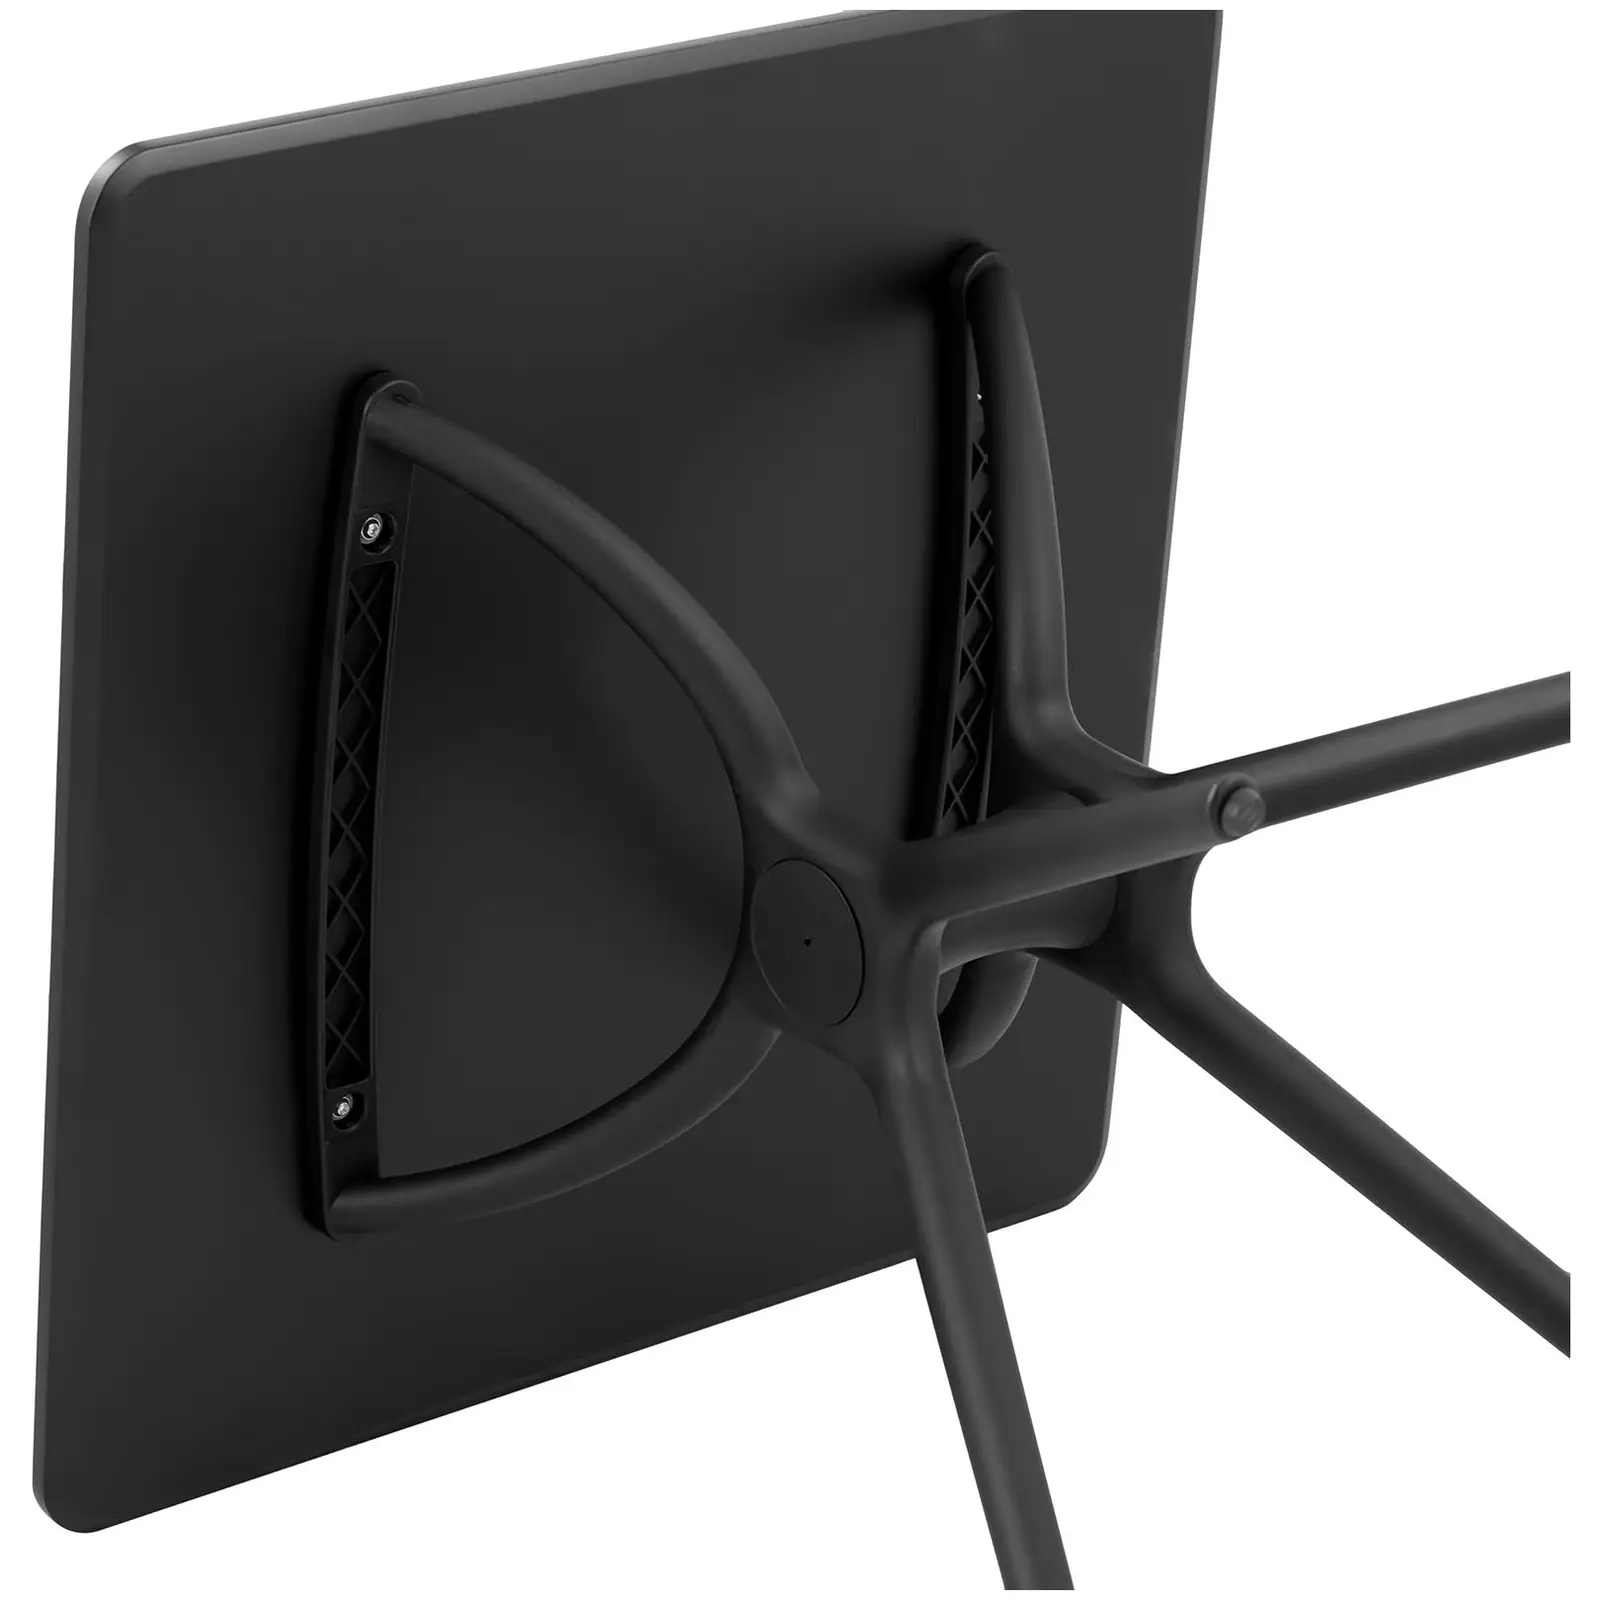 Asztal - négyzet - 80 x 80 cm - fekete